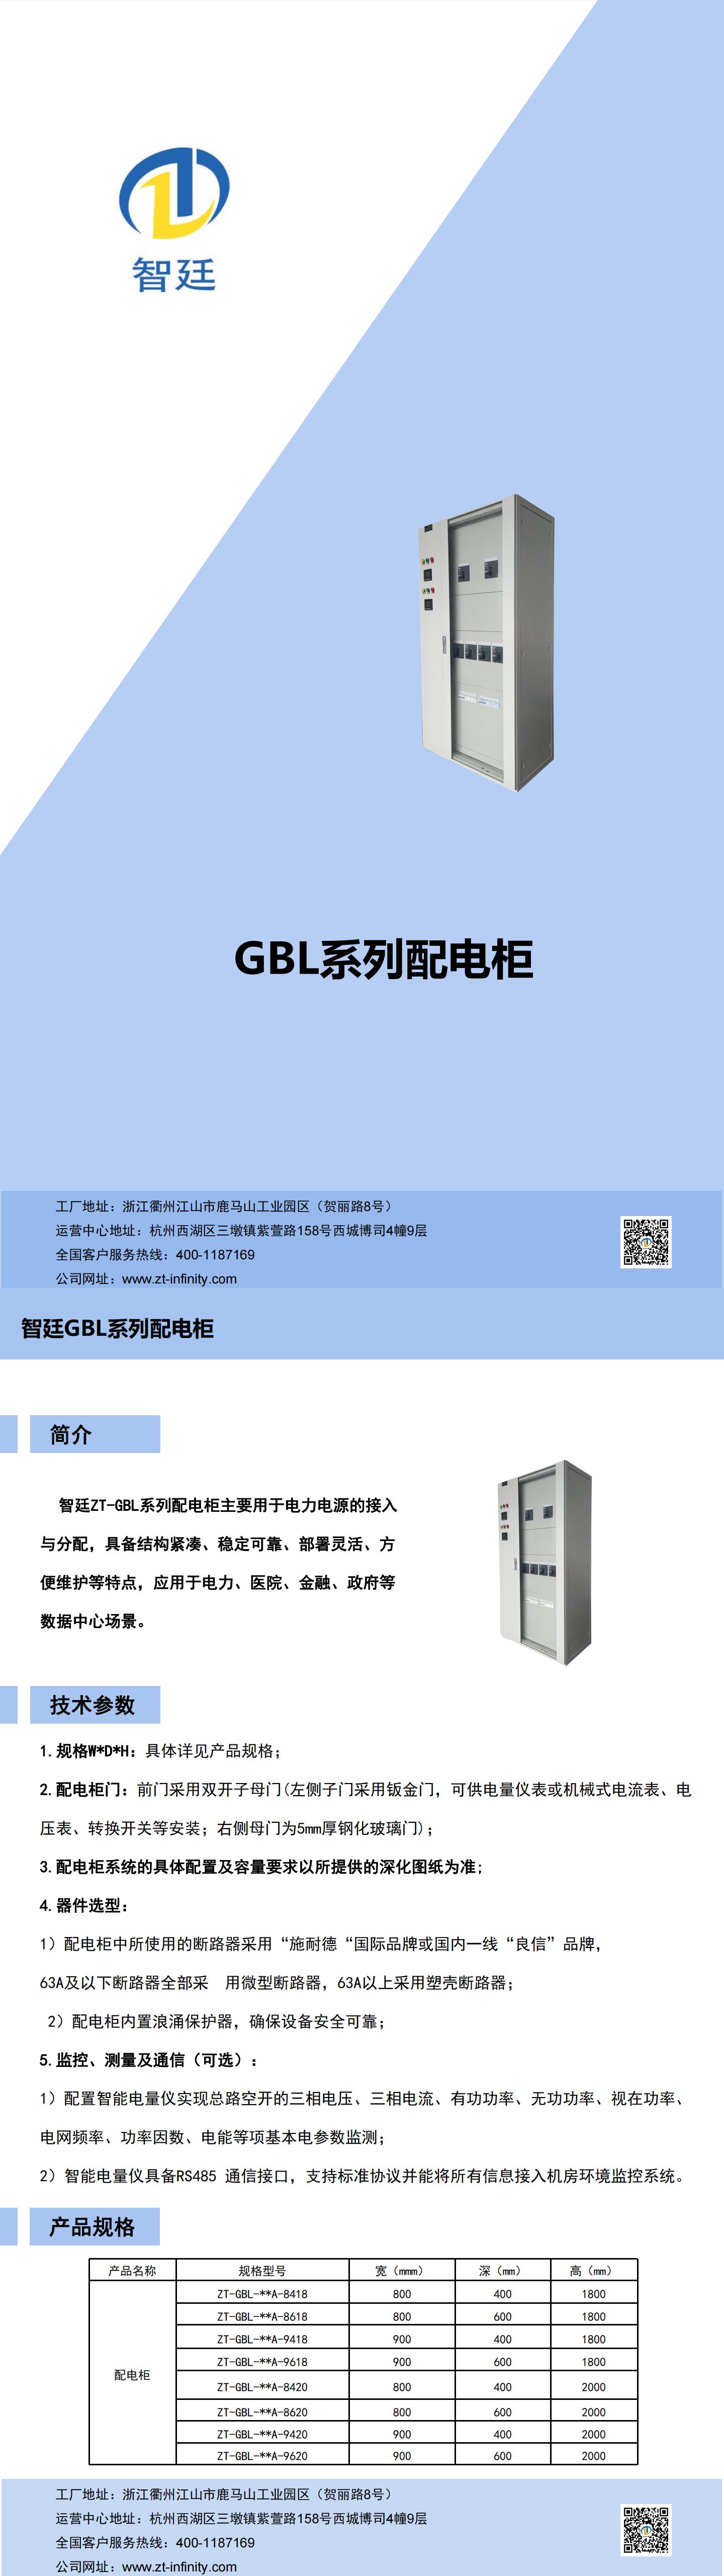 GBL系列配电柜彩页--智廷_00